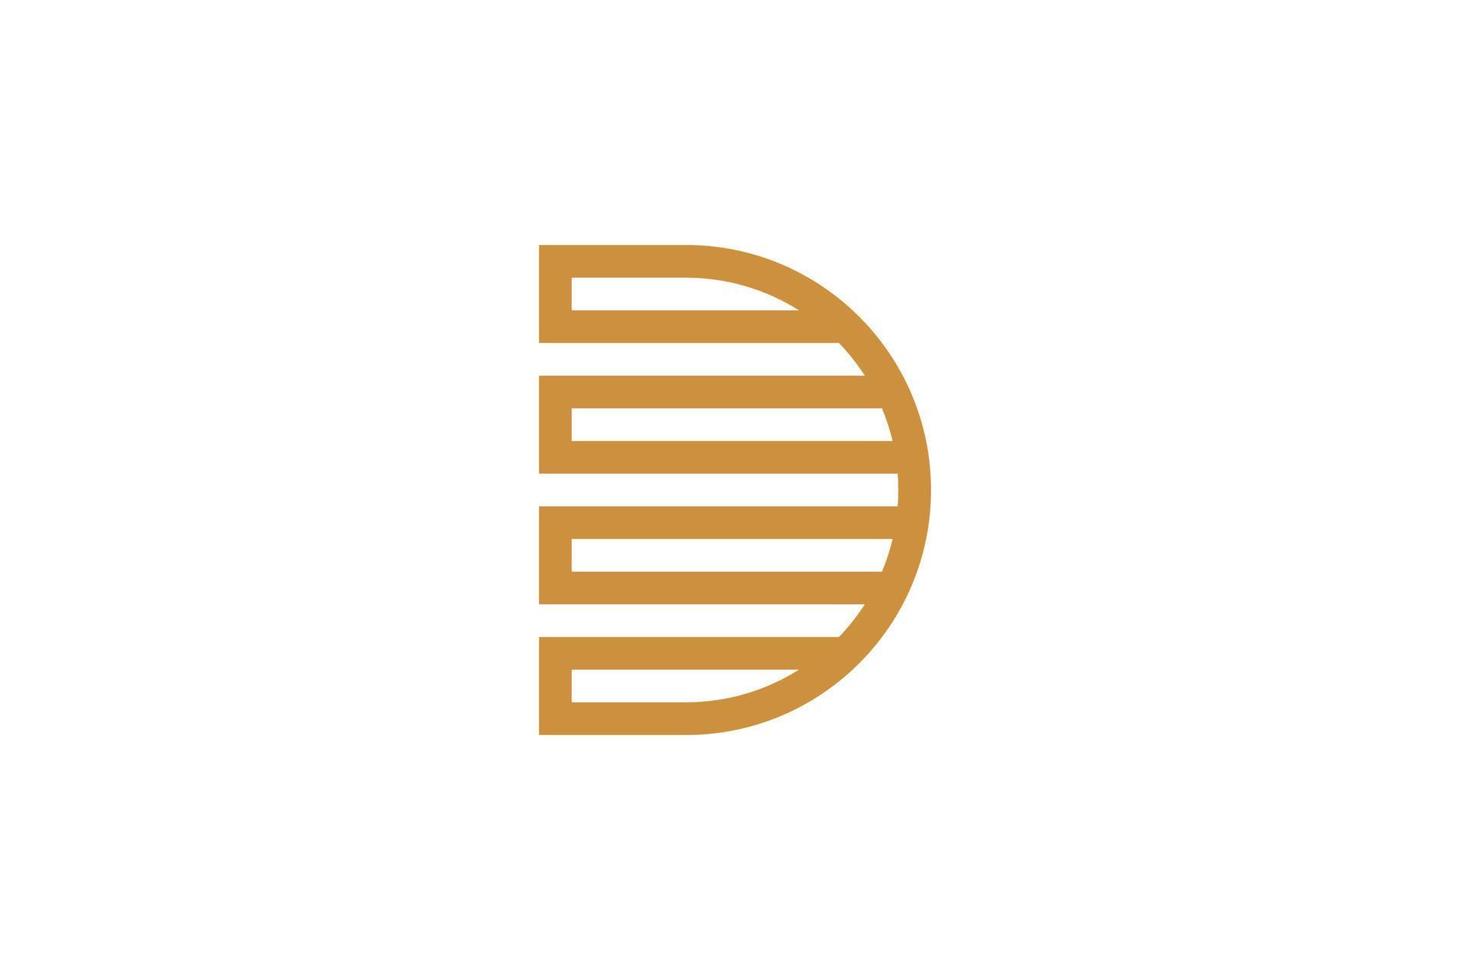 Monoline Letter D Logo Template vector